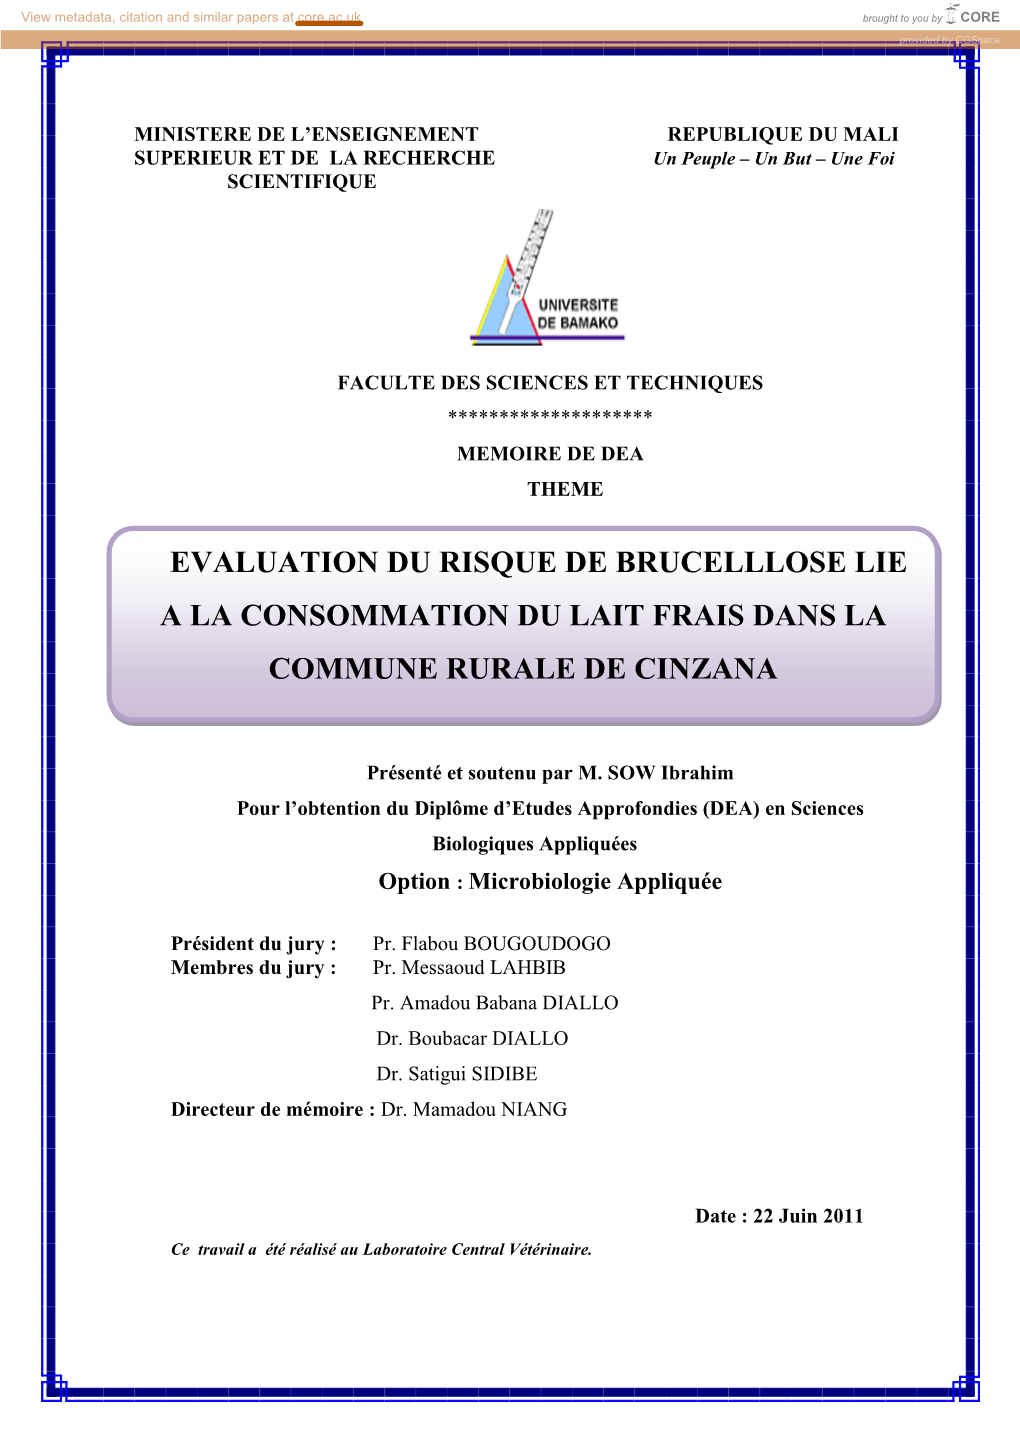 Evaluation Du Risque De Brucelllose Lie a La Consommation Du Lait Frais Dans La Commune Rurale De Cinzana